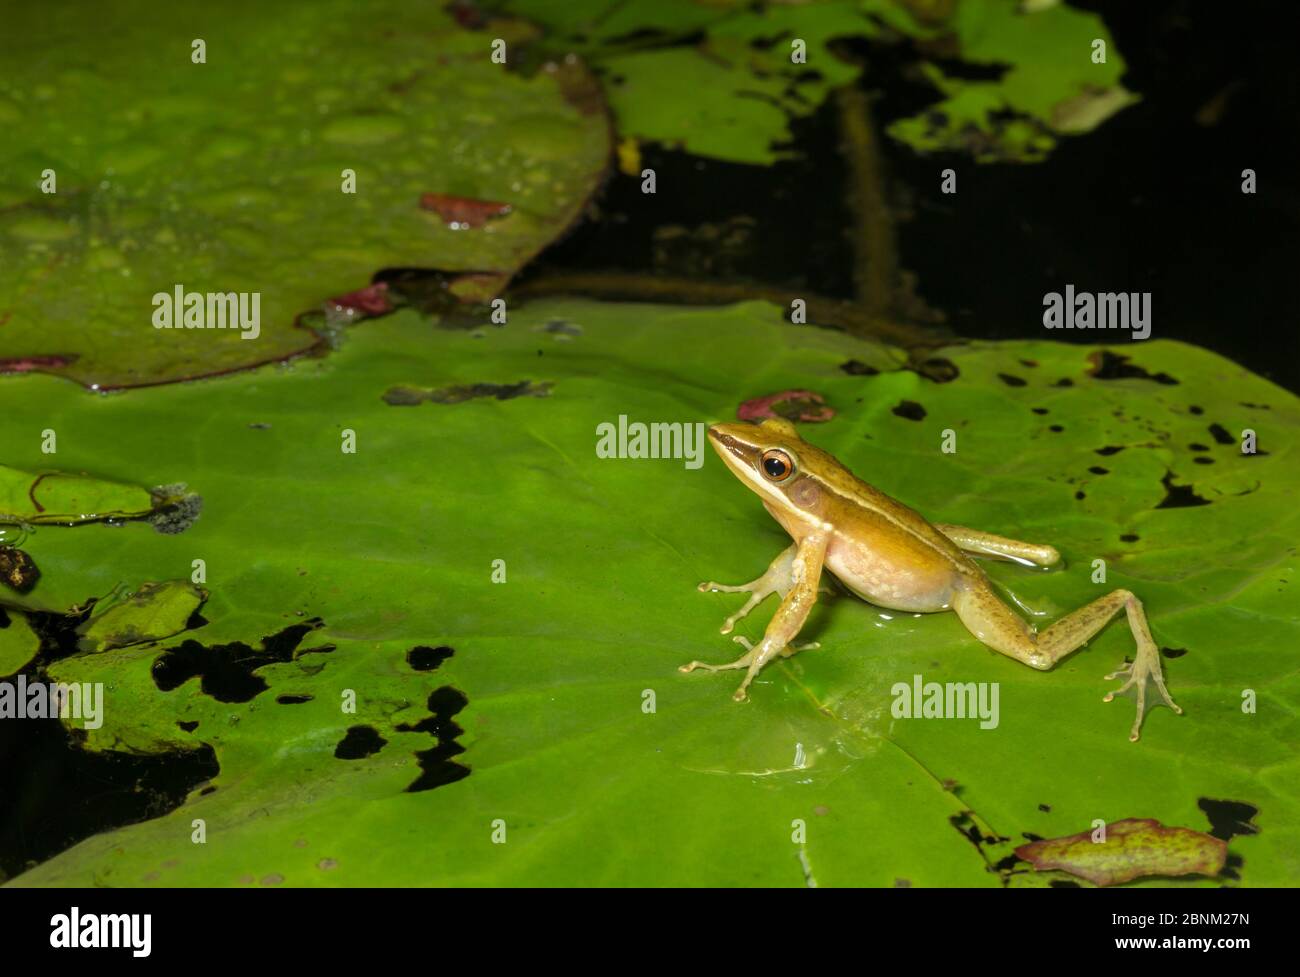 Golden frog (Hylarana aurantiaca) on floating leaf in water. Anamalai wildlife sanctuary, India. Stock Photo